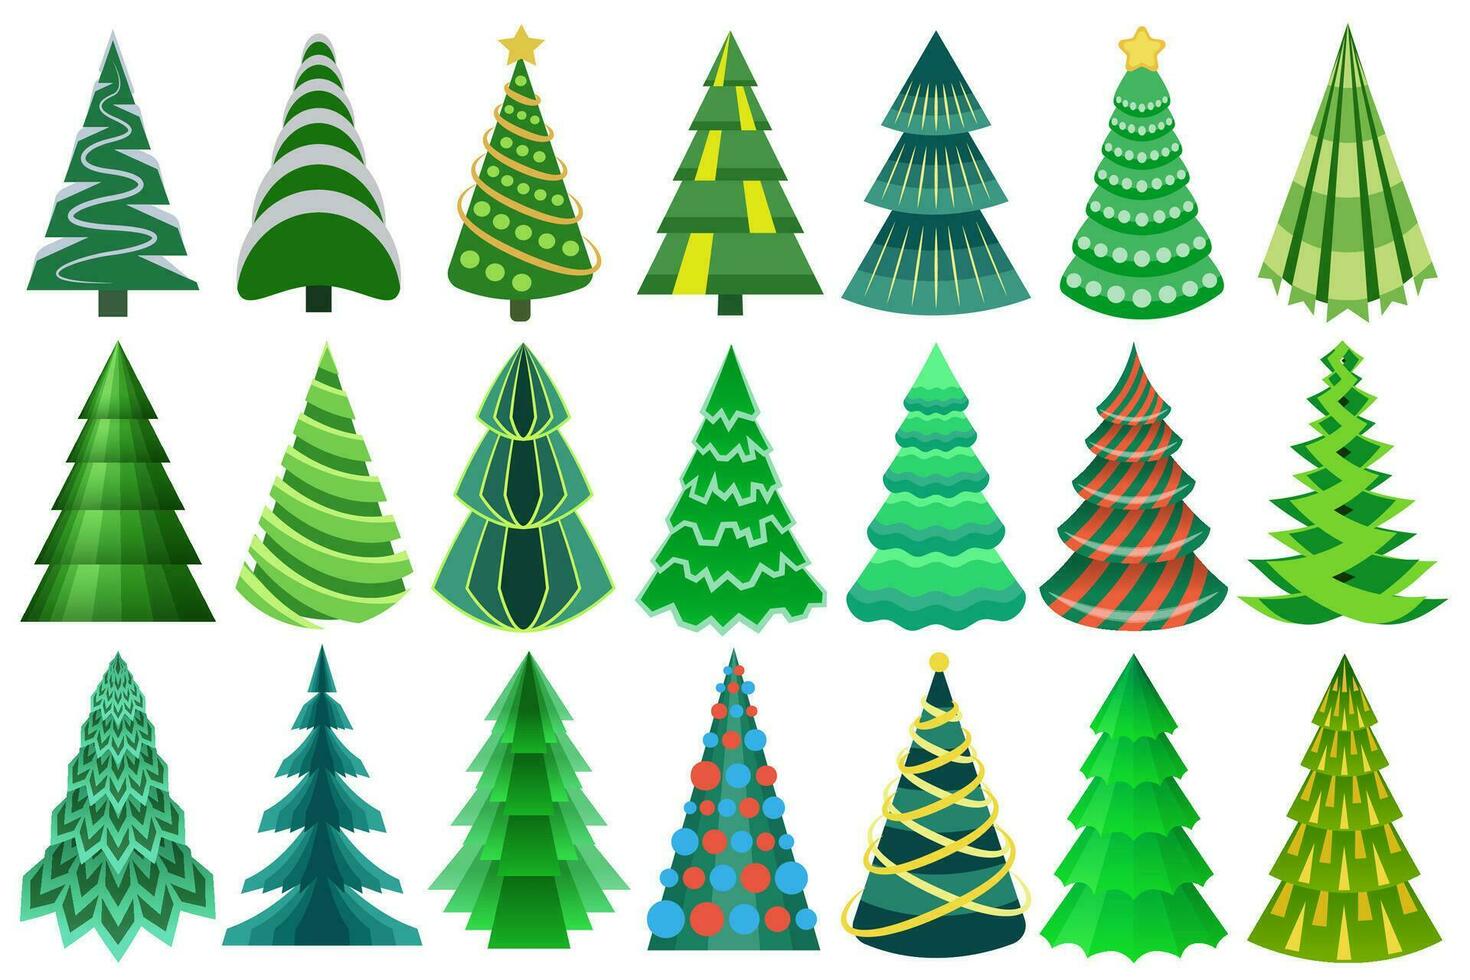 gestileerd, decoratief Kerstmis boom set. geweldig abstract, vlak Kerstmis bomen verzameling voor uw ontwerpen. vector